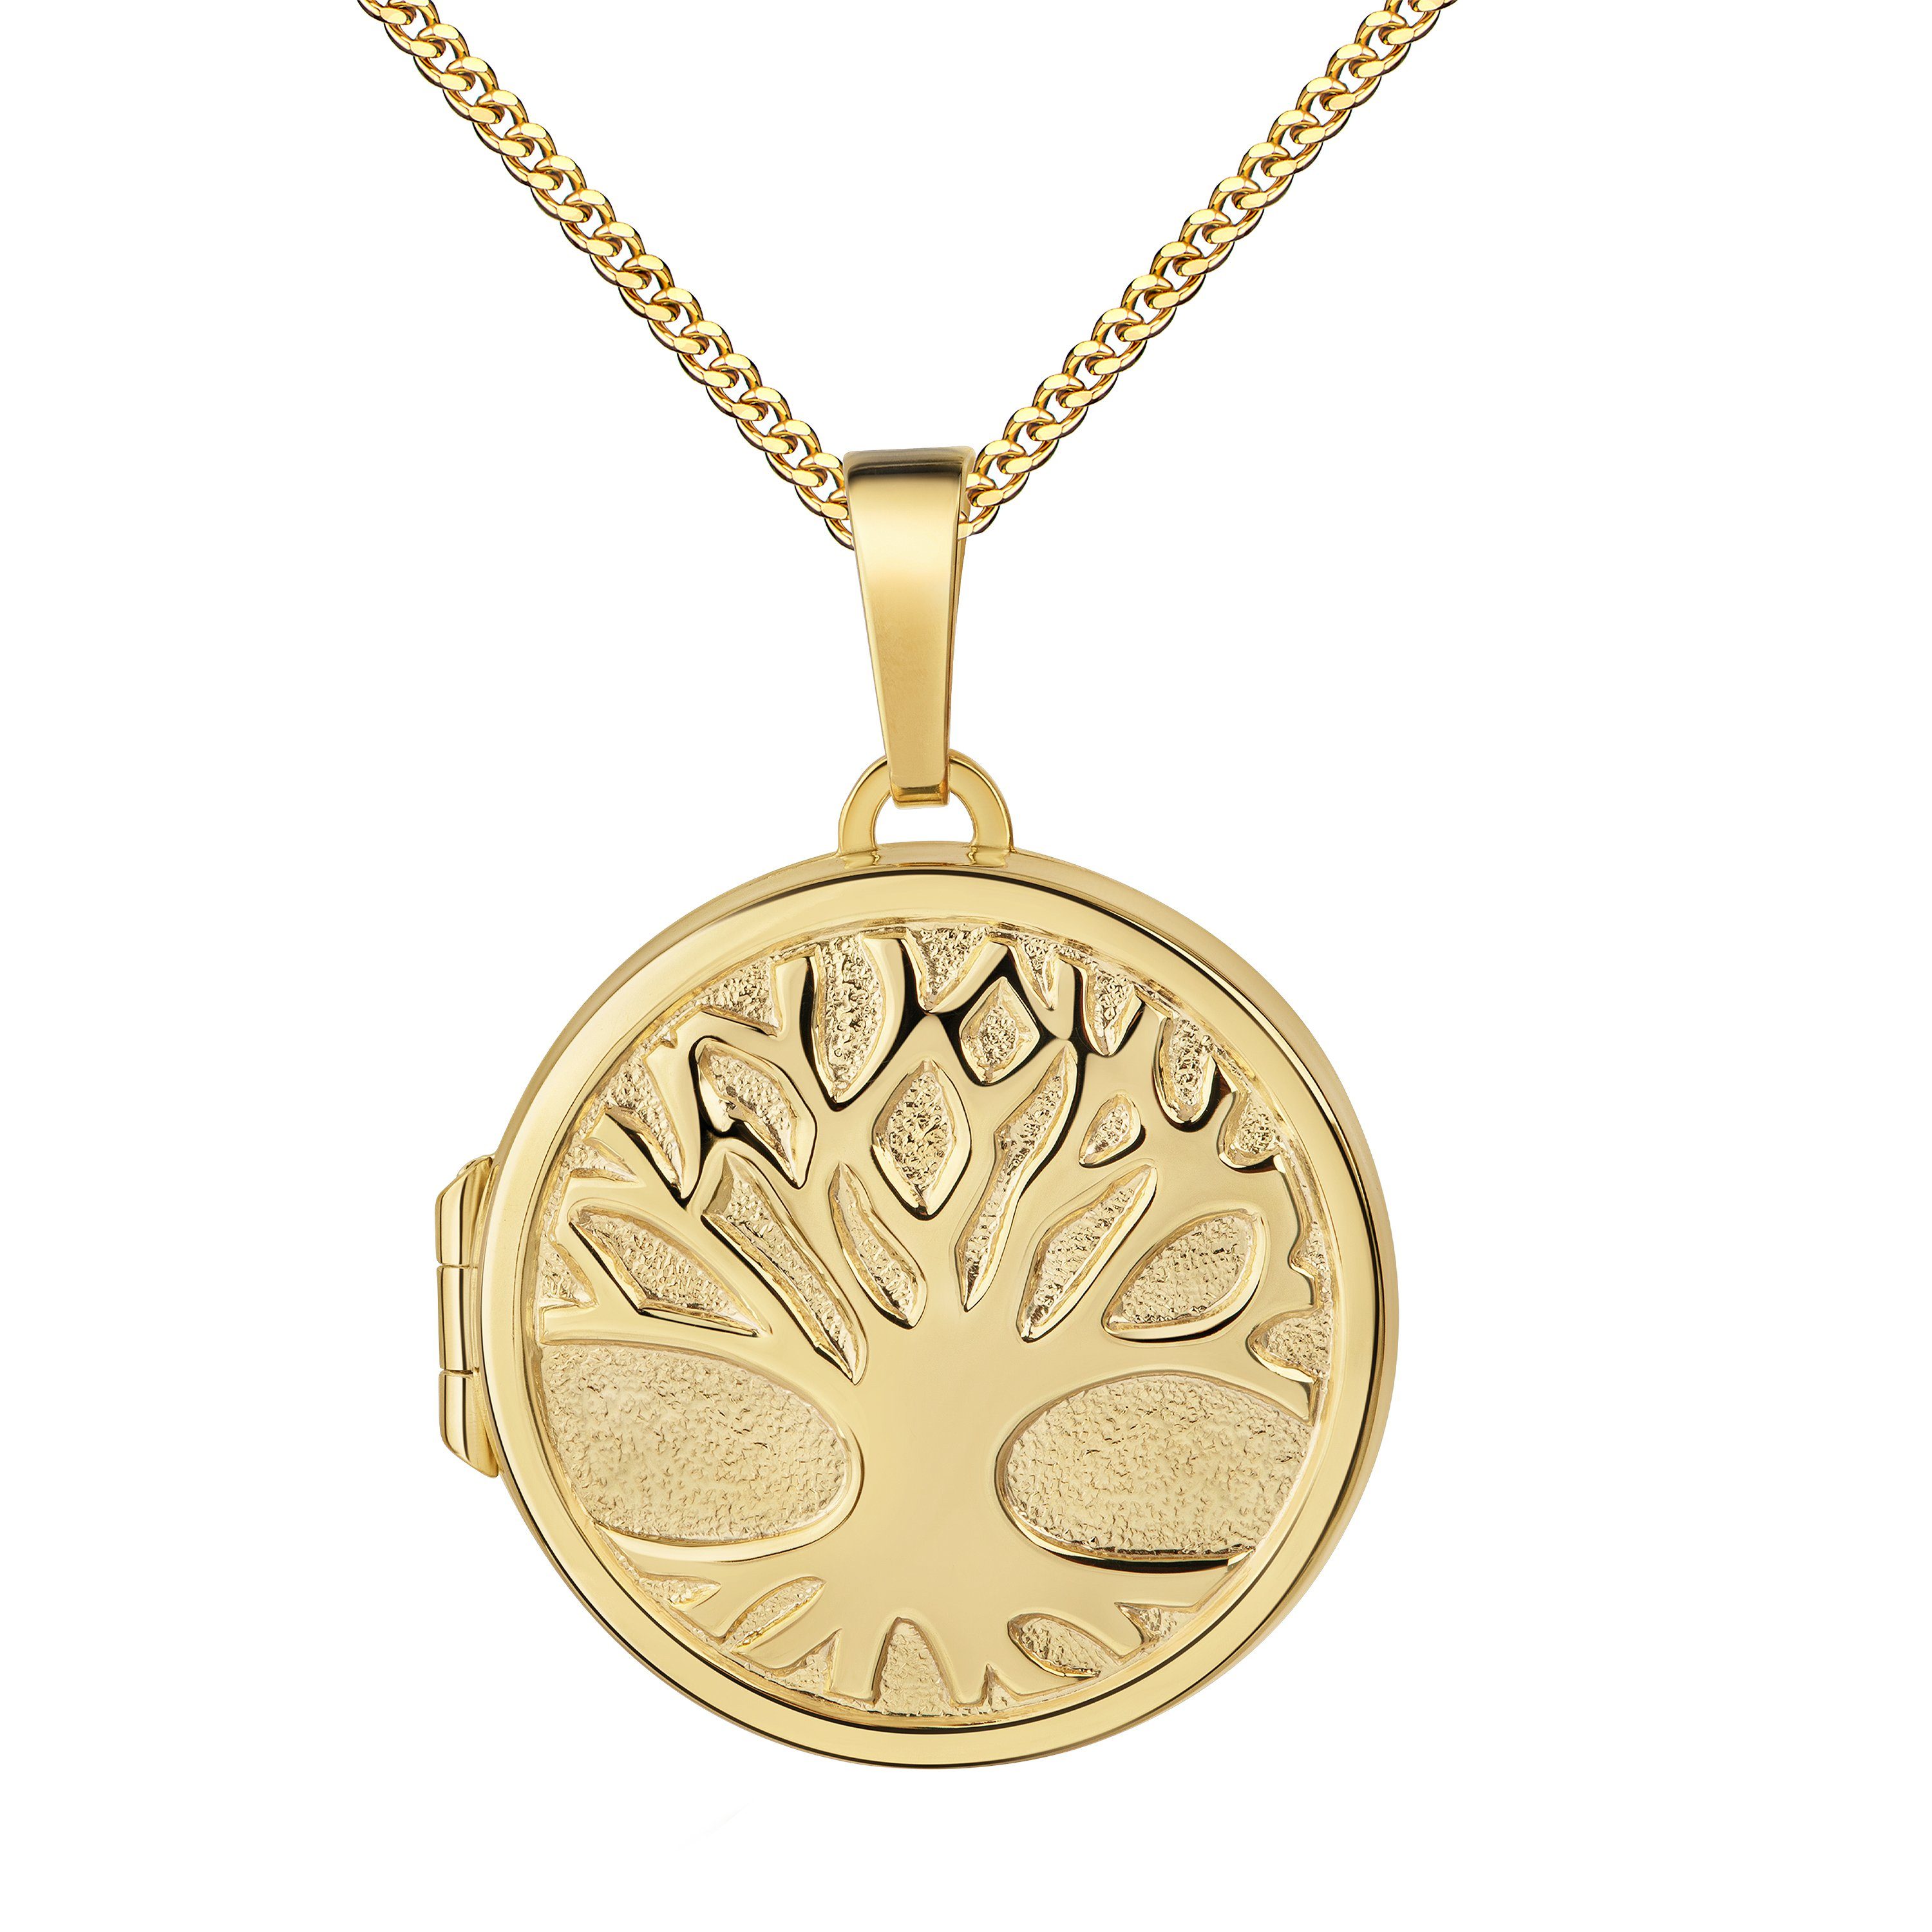 JEVELION Medallionanhänger Medaillon Gold 333 Baum des Lebens Anhänger rund zum Öffnen 2 Fotos (Bilderamulett, für Damen und Mädchen), Mit Halskette vergoldet - Länge wählbar 36 - 70 cm oder ohne Kette.